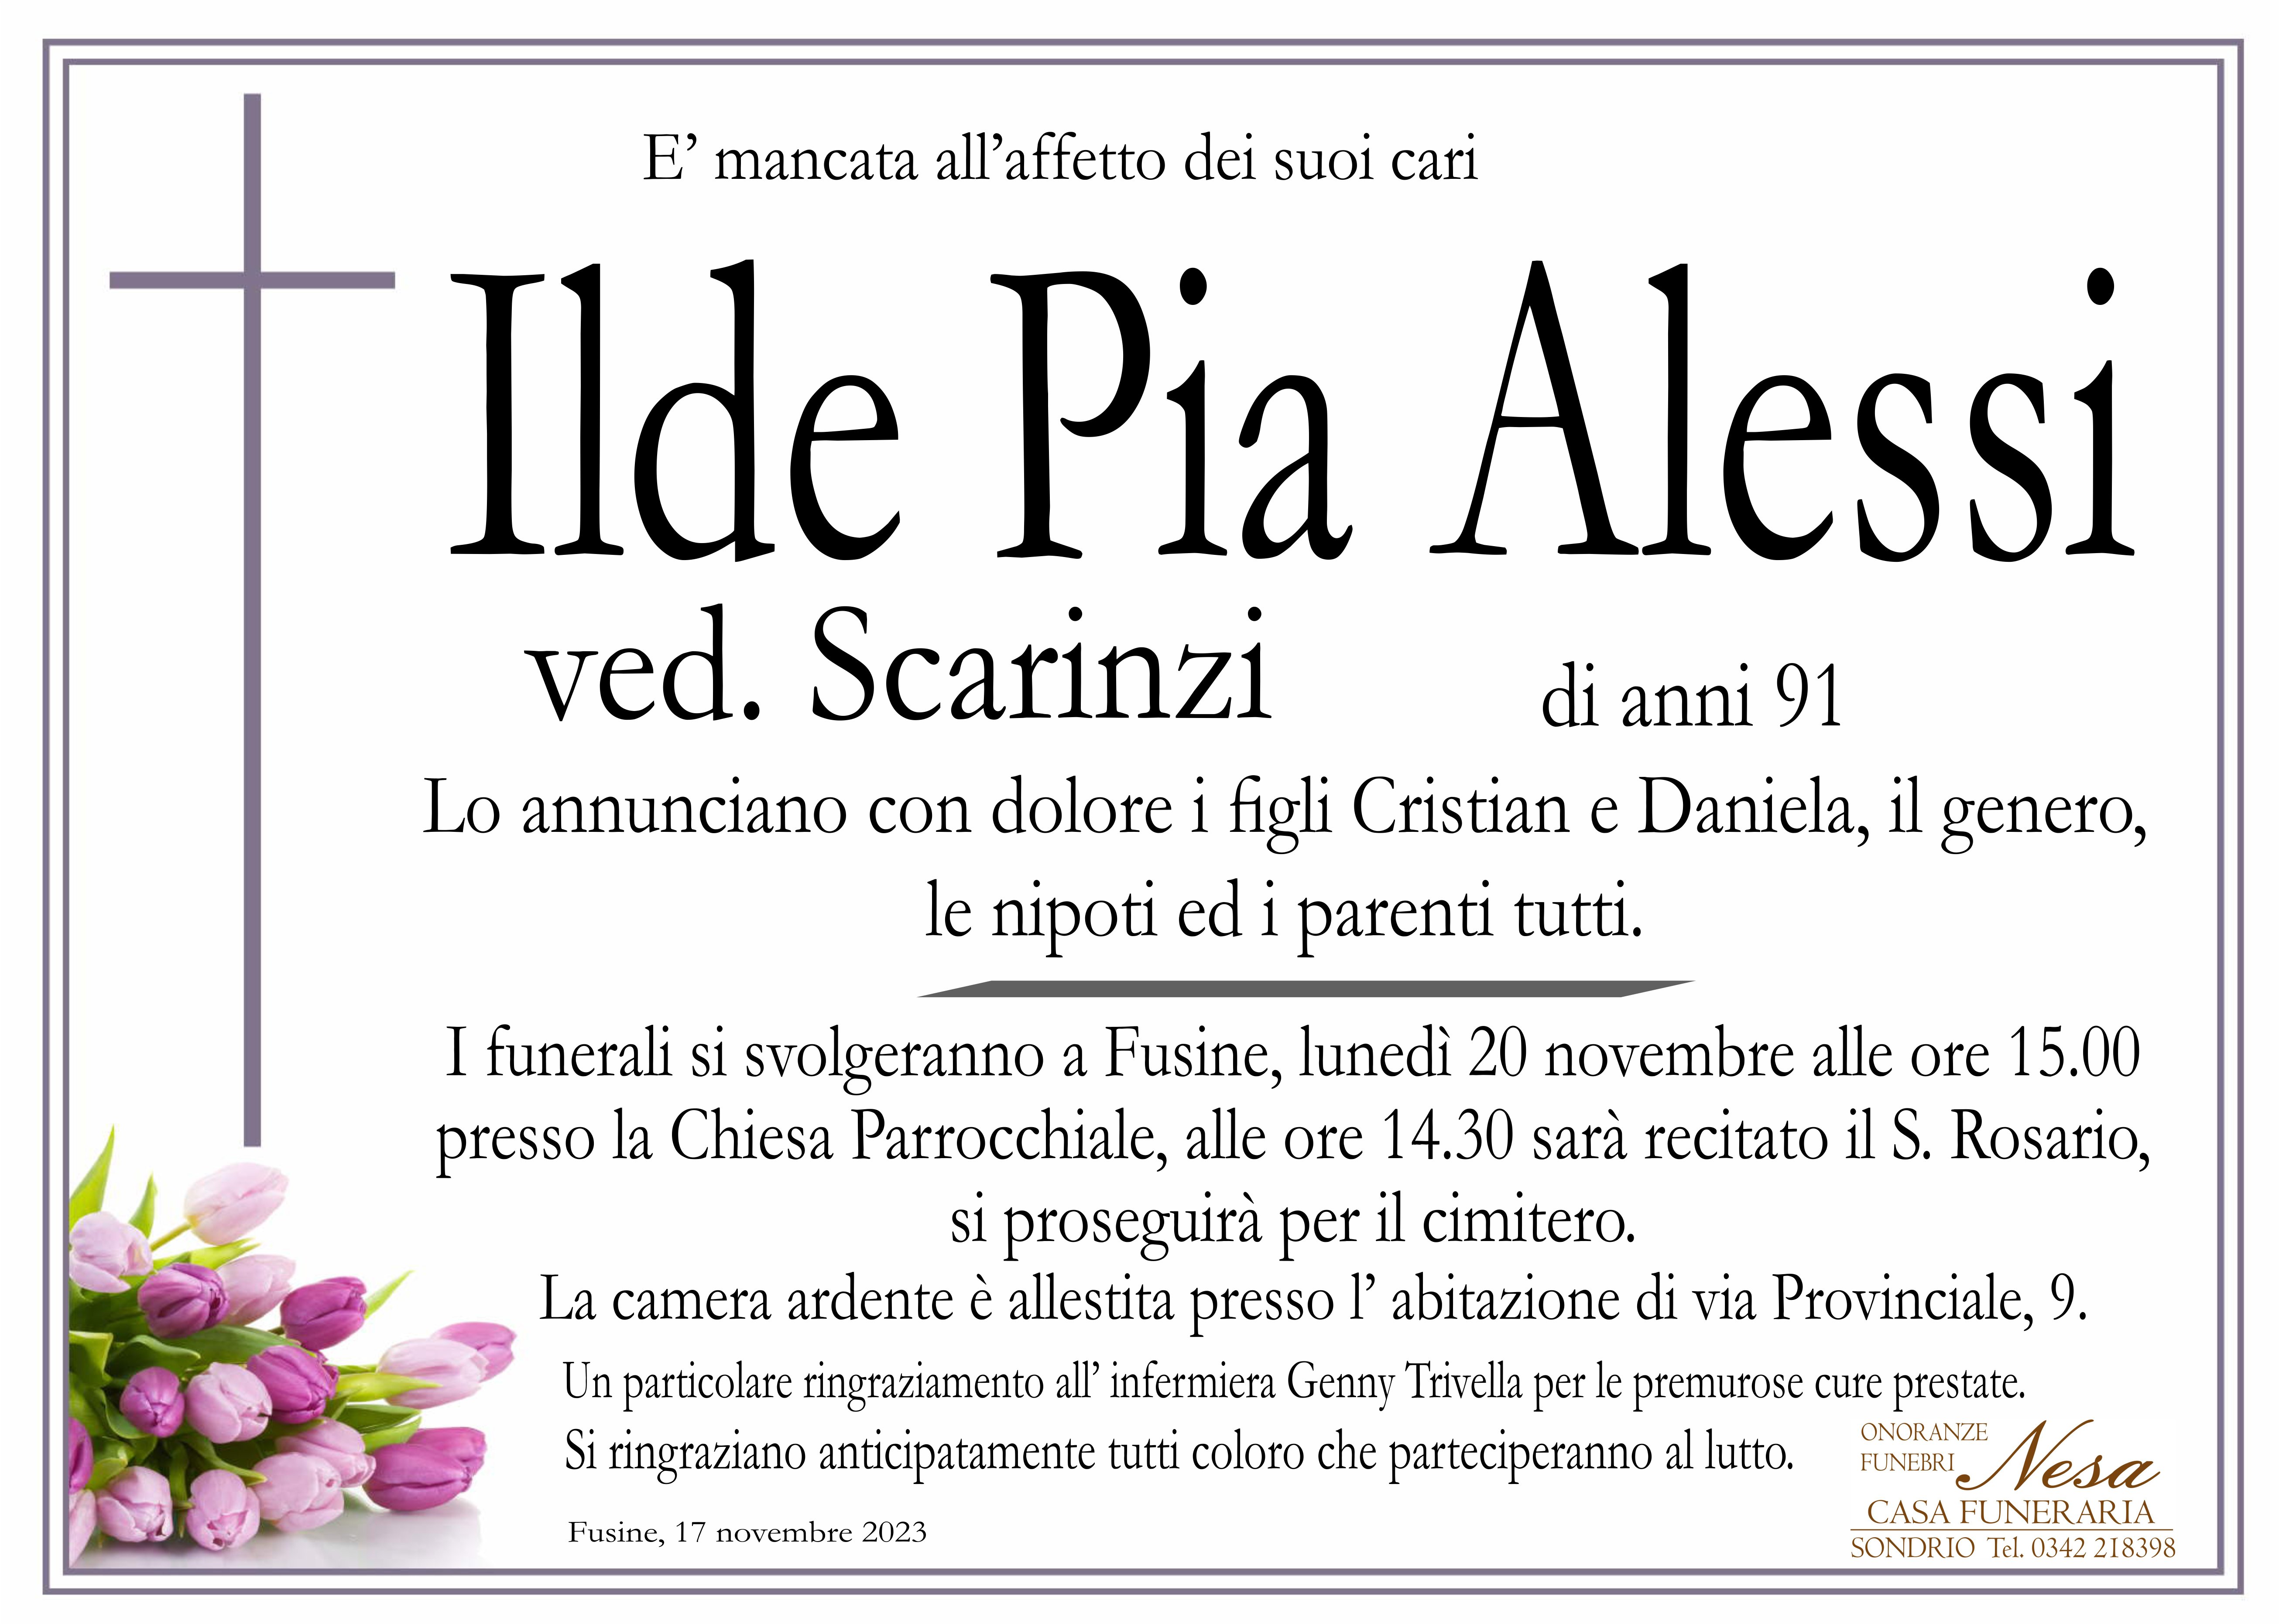 Necrologio Ilde Pia Alessi ved. Scarinzi